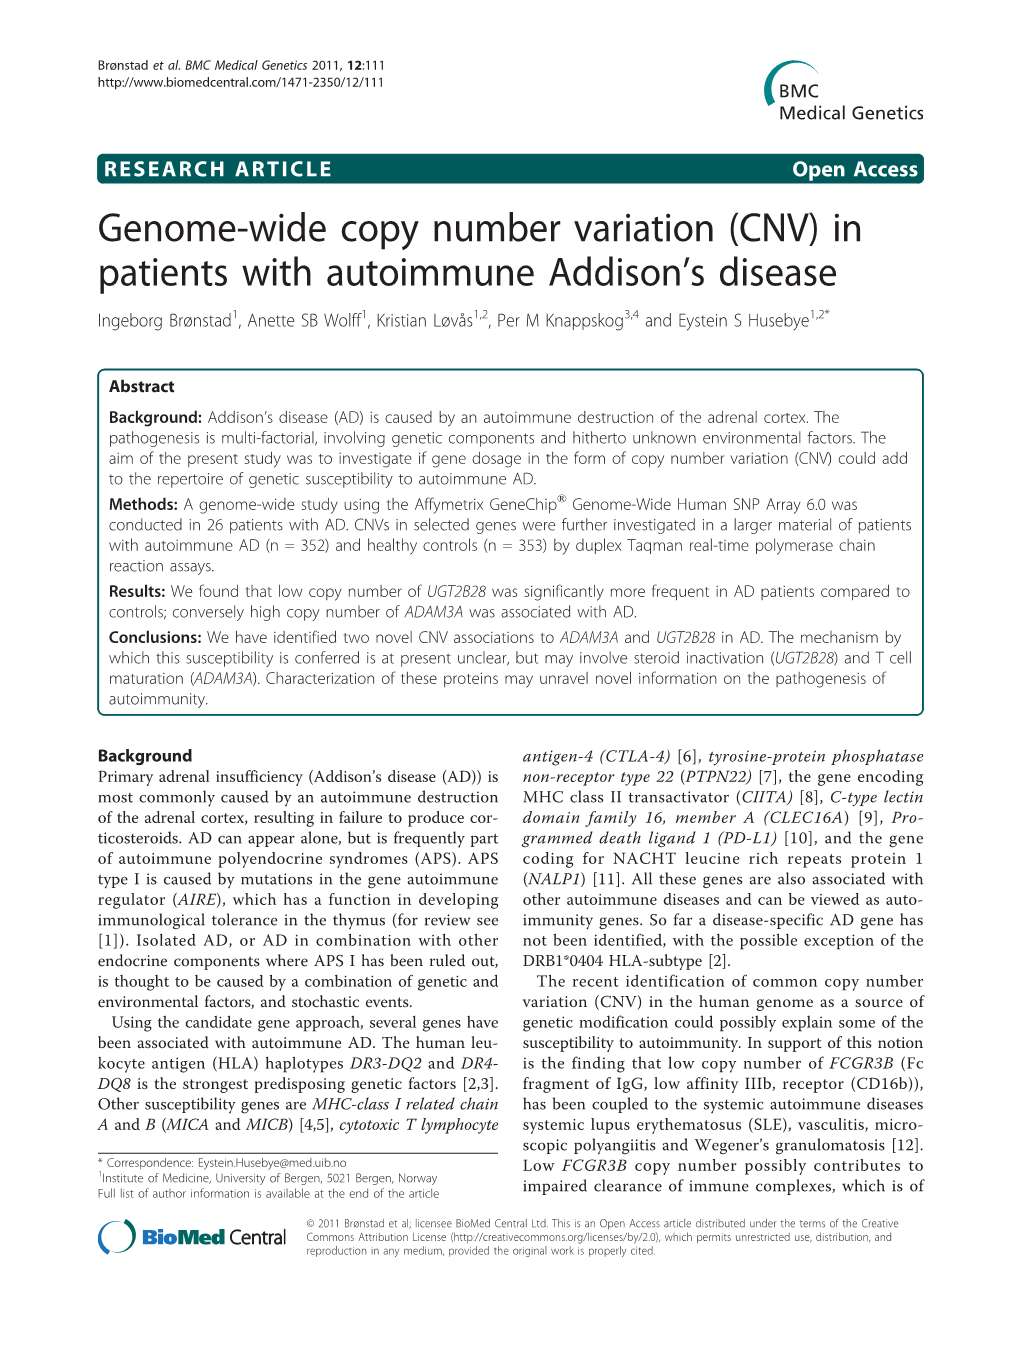 Genome-Wide Copy Number Variation (CNV)